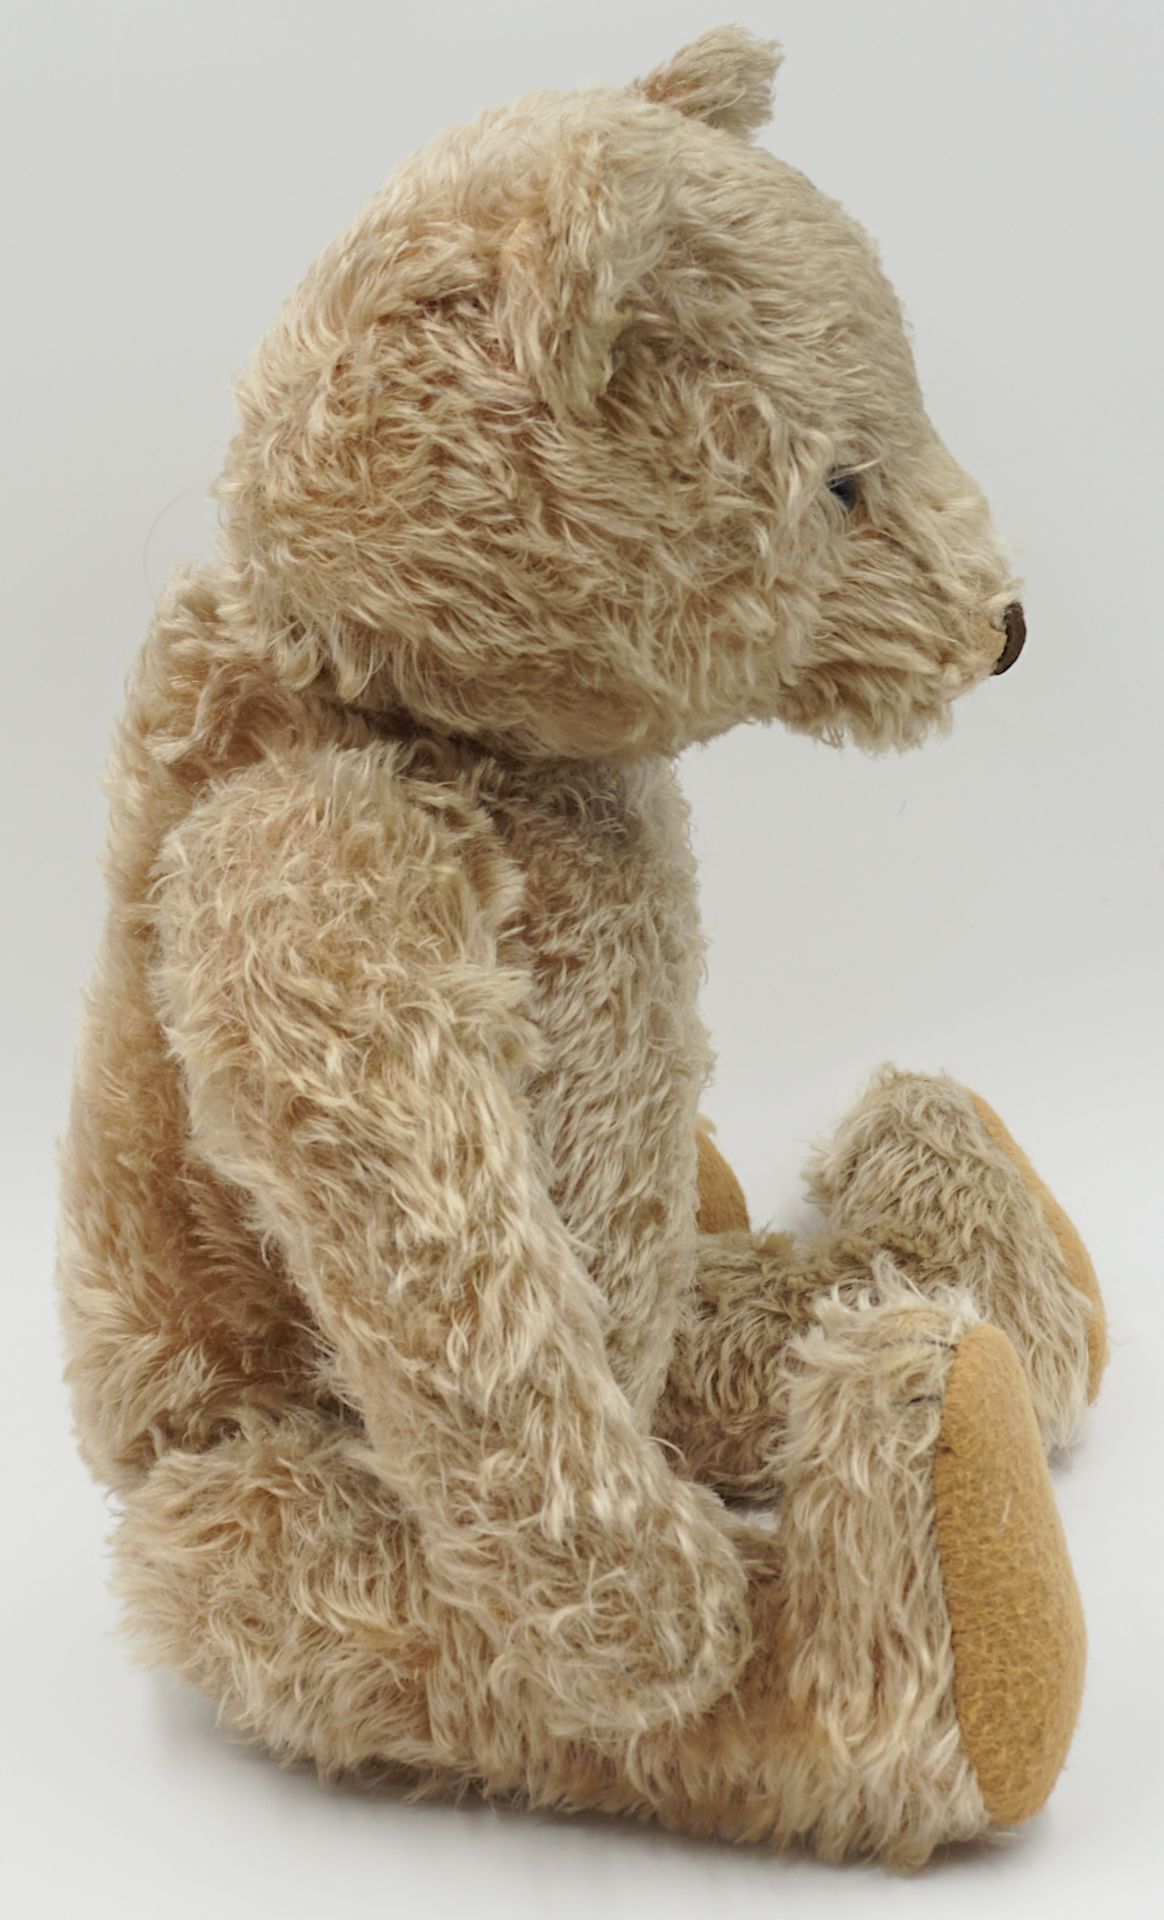 1 Teddybär wohl STEIFF wohl um 1940/50 hellbeiger Mohair - Bild 2 aus 4